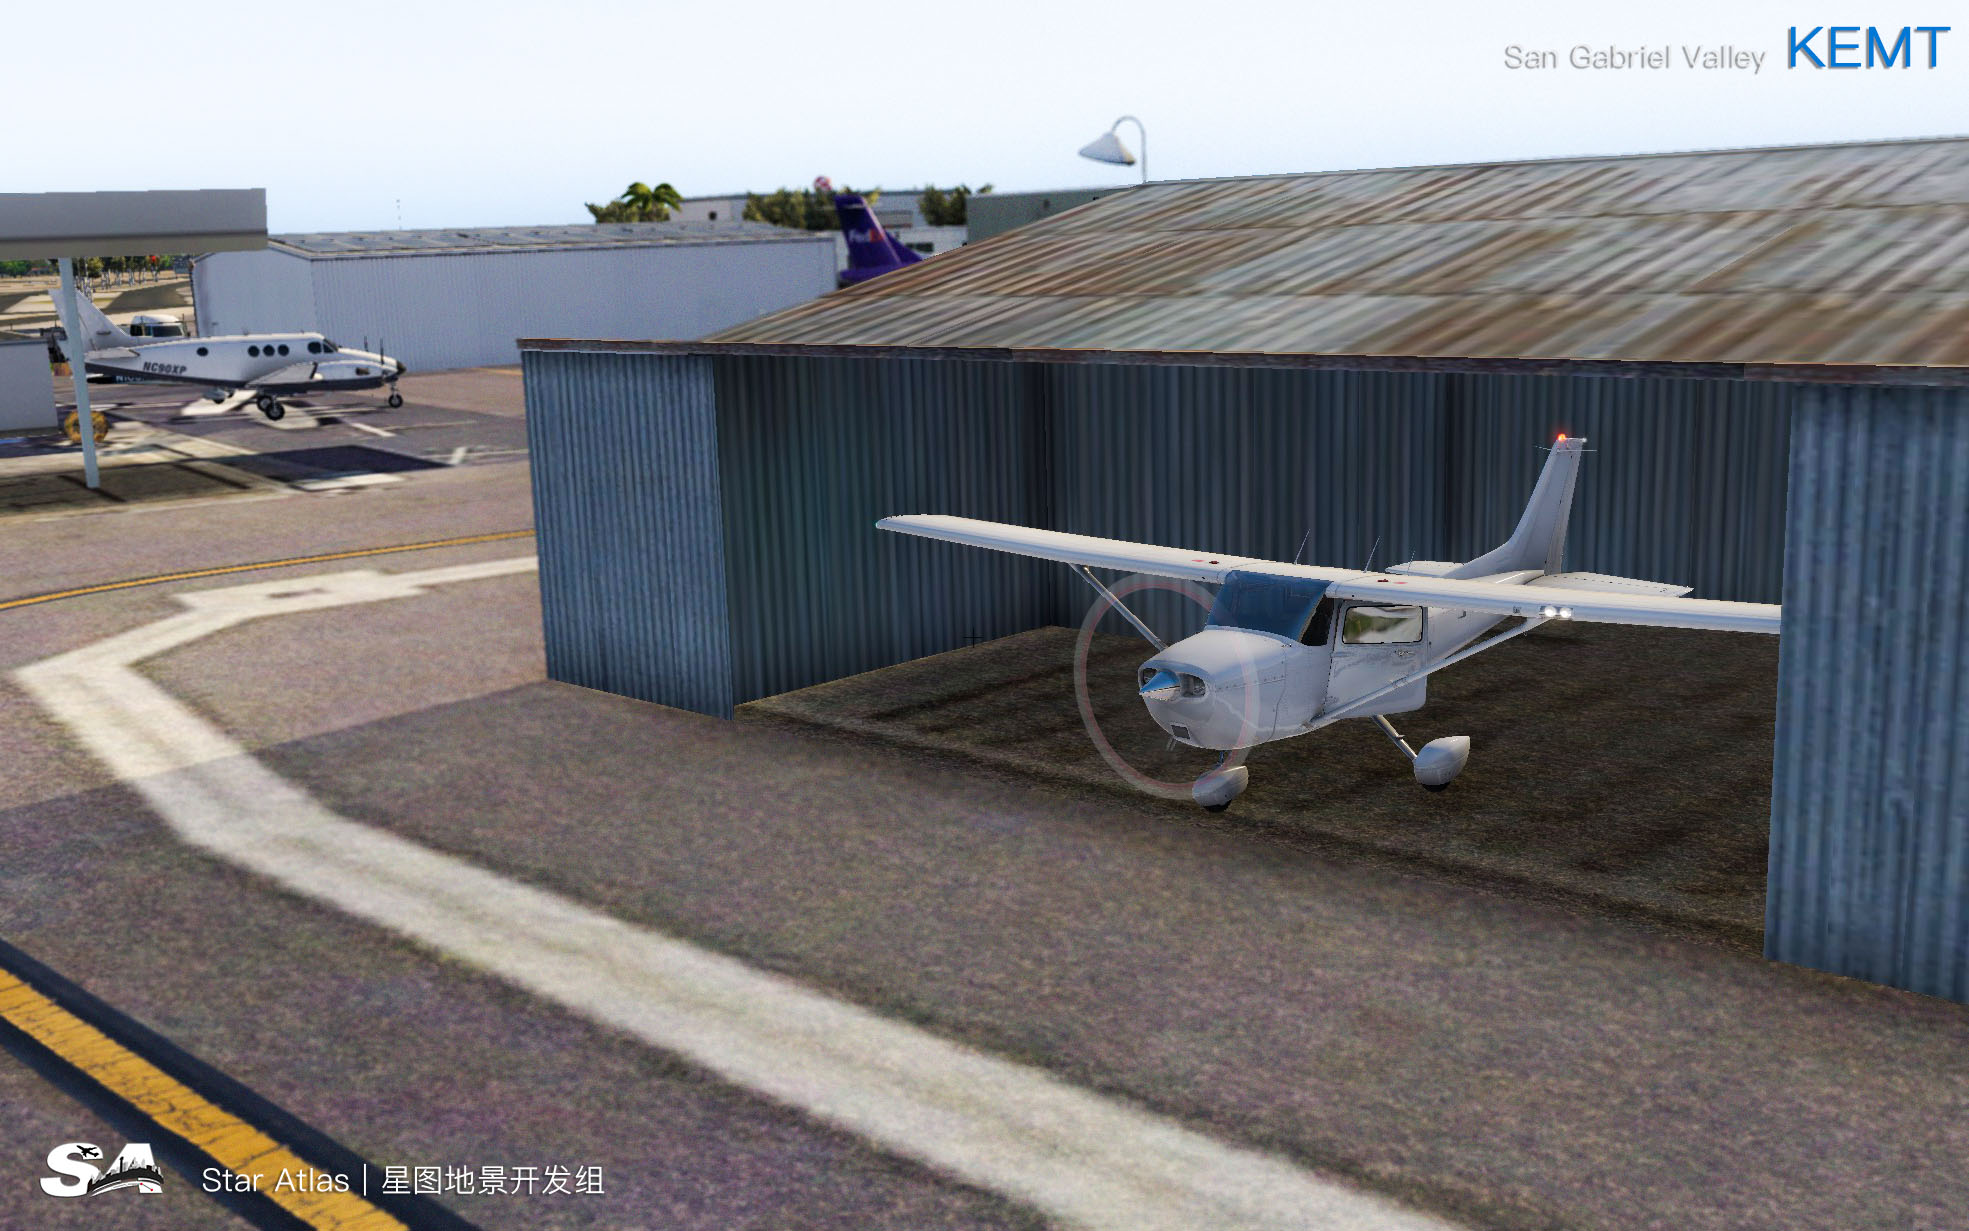 【X-Plane】KEMT-圣盖博谷机场 HD 1.0-3631 